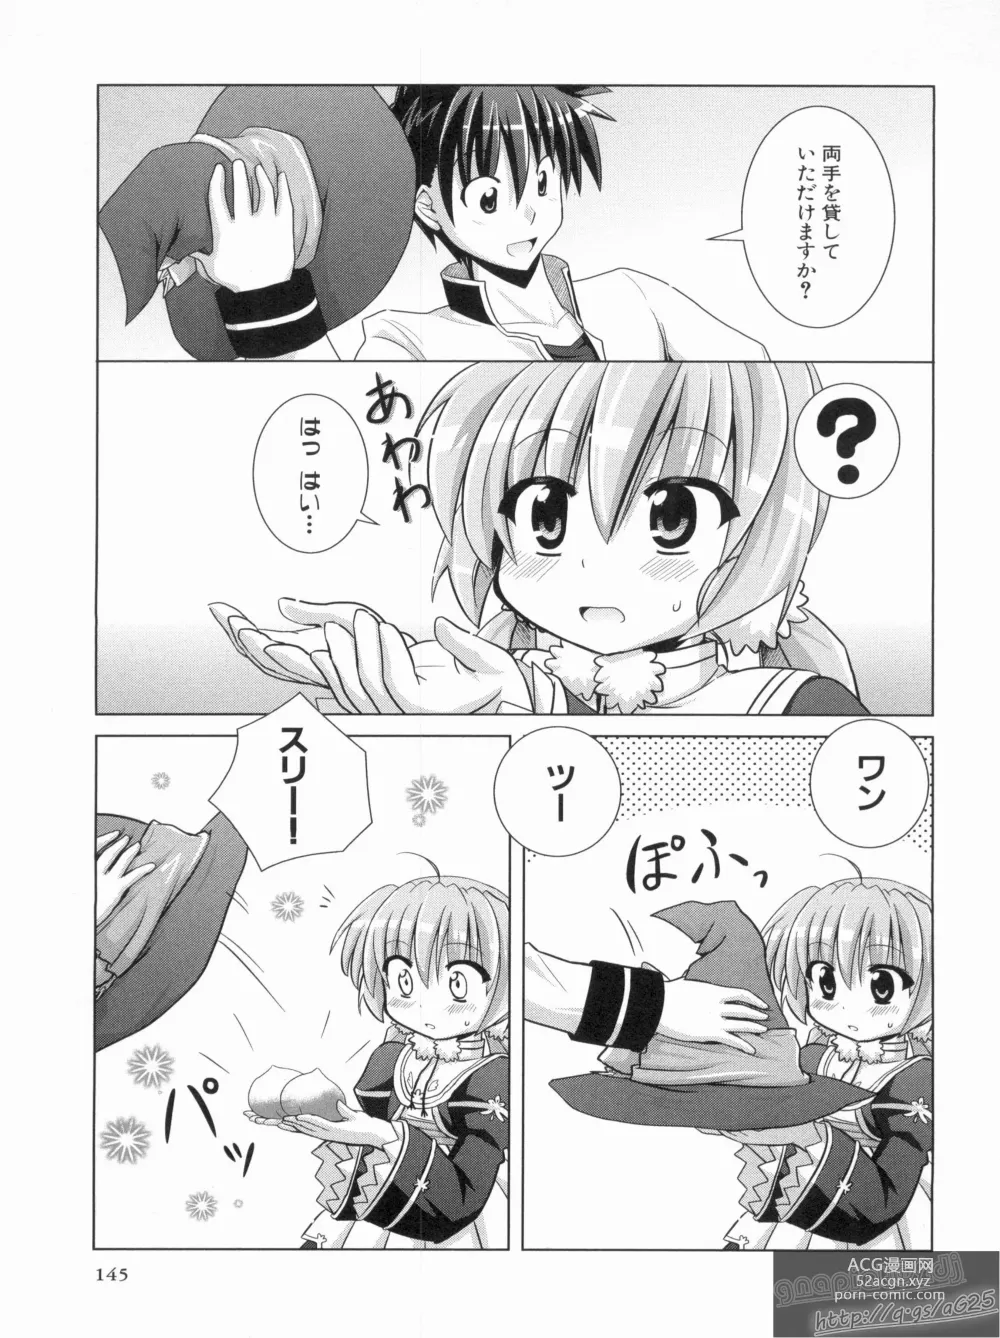 Page 149 of manga Shin Koihime Musou Gaishi Saiten VOL.2